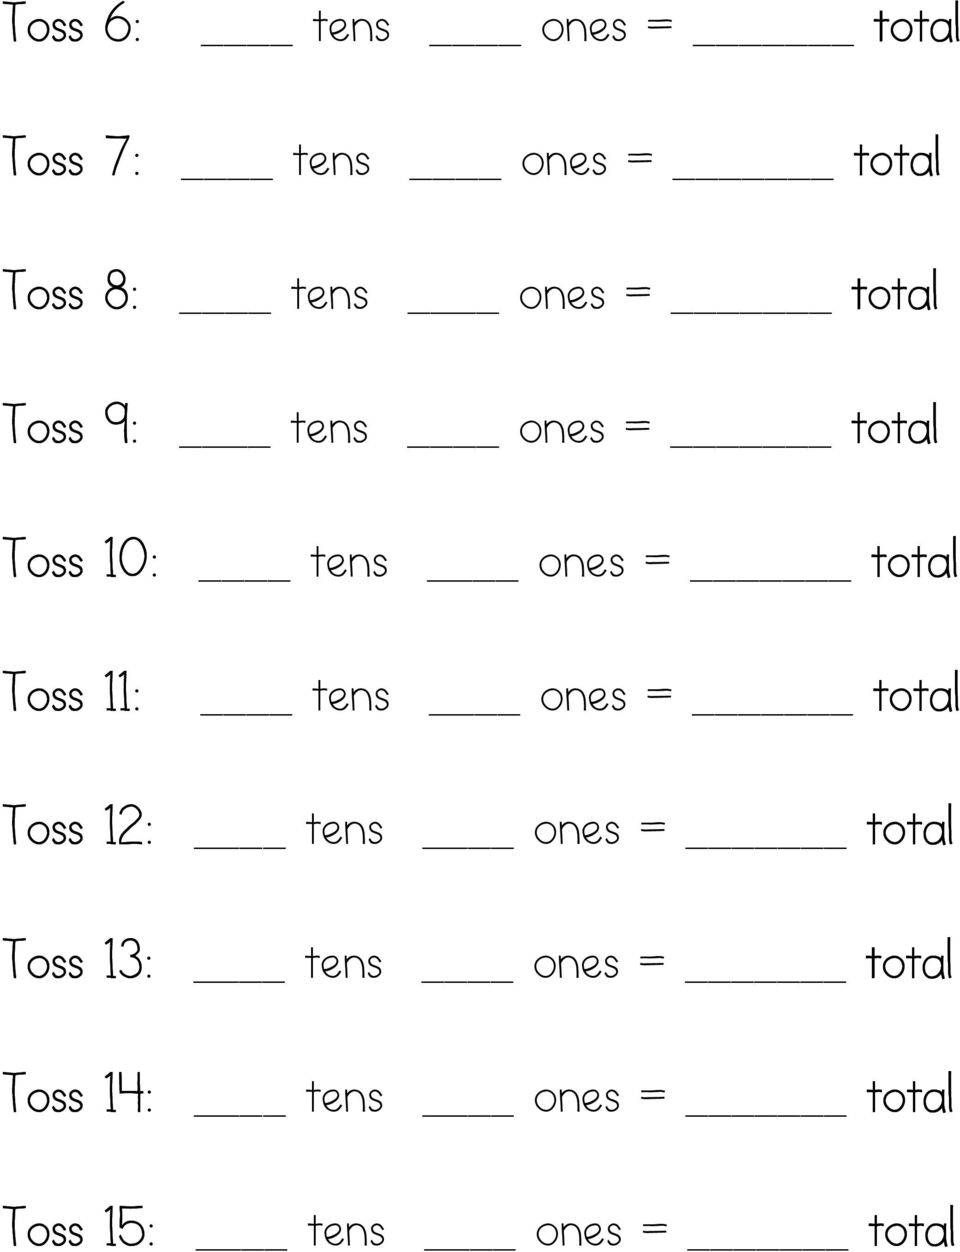 Toss 11: tens ones = total Toss 12: tens ones = total Toss 13: